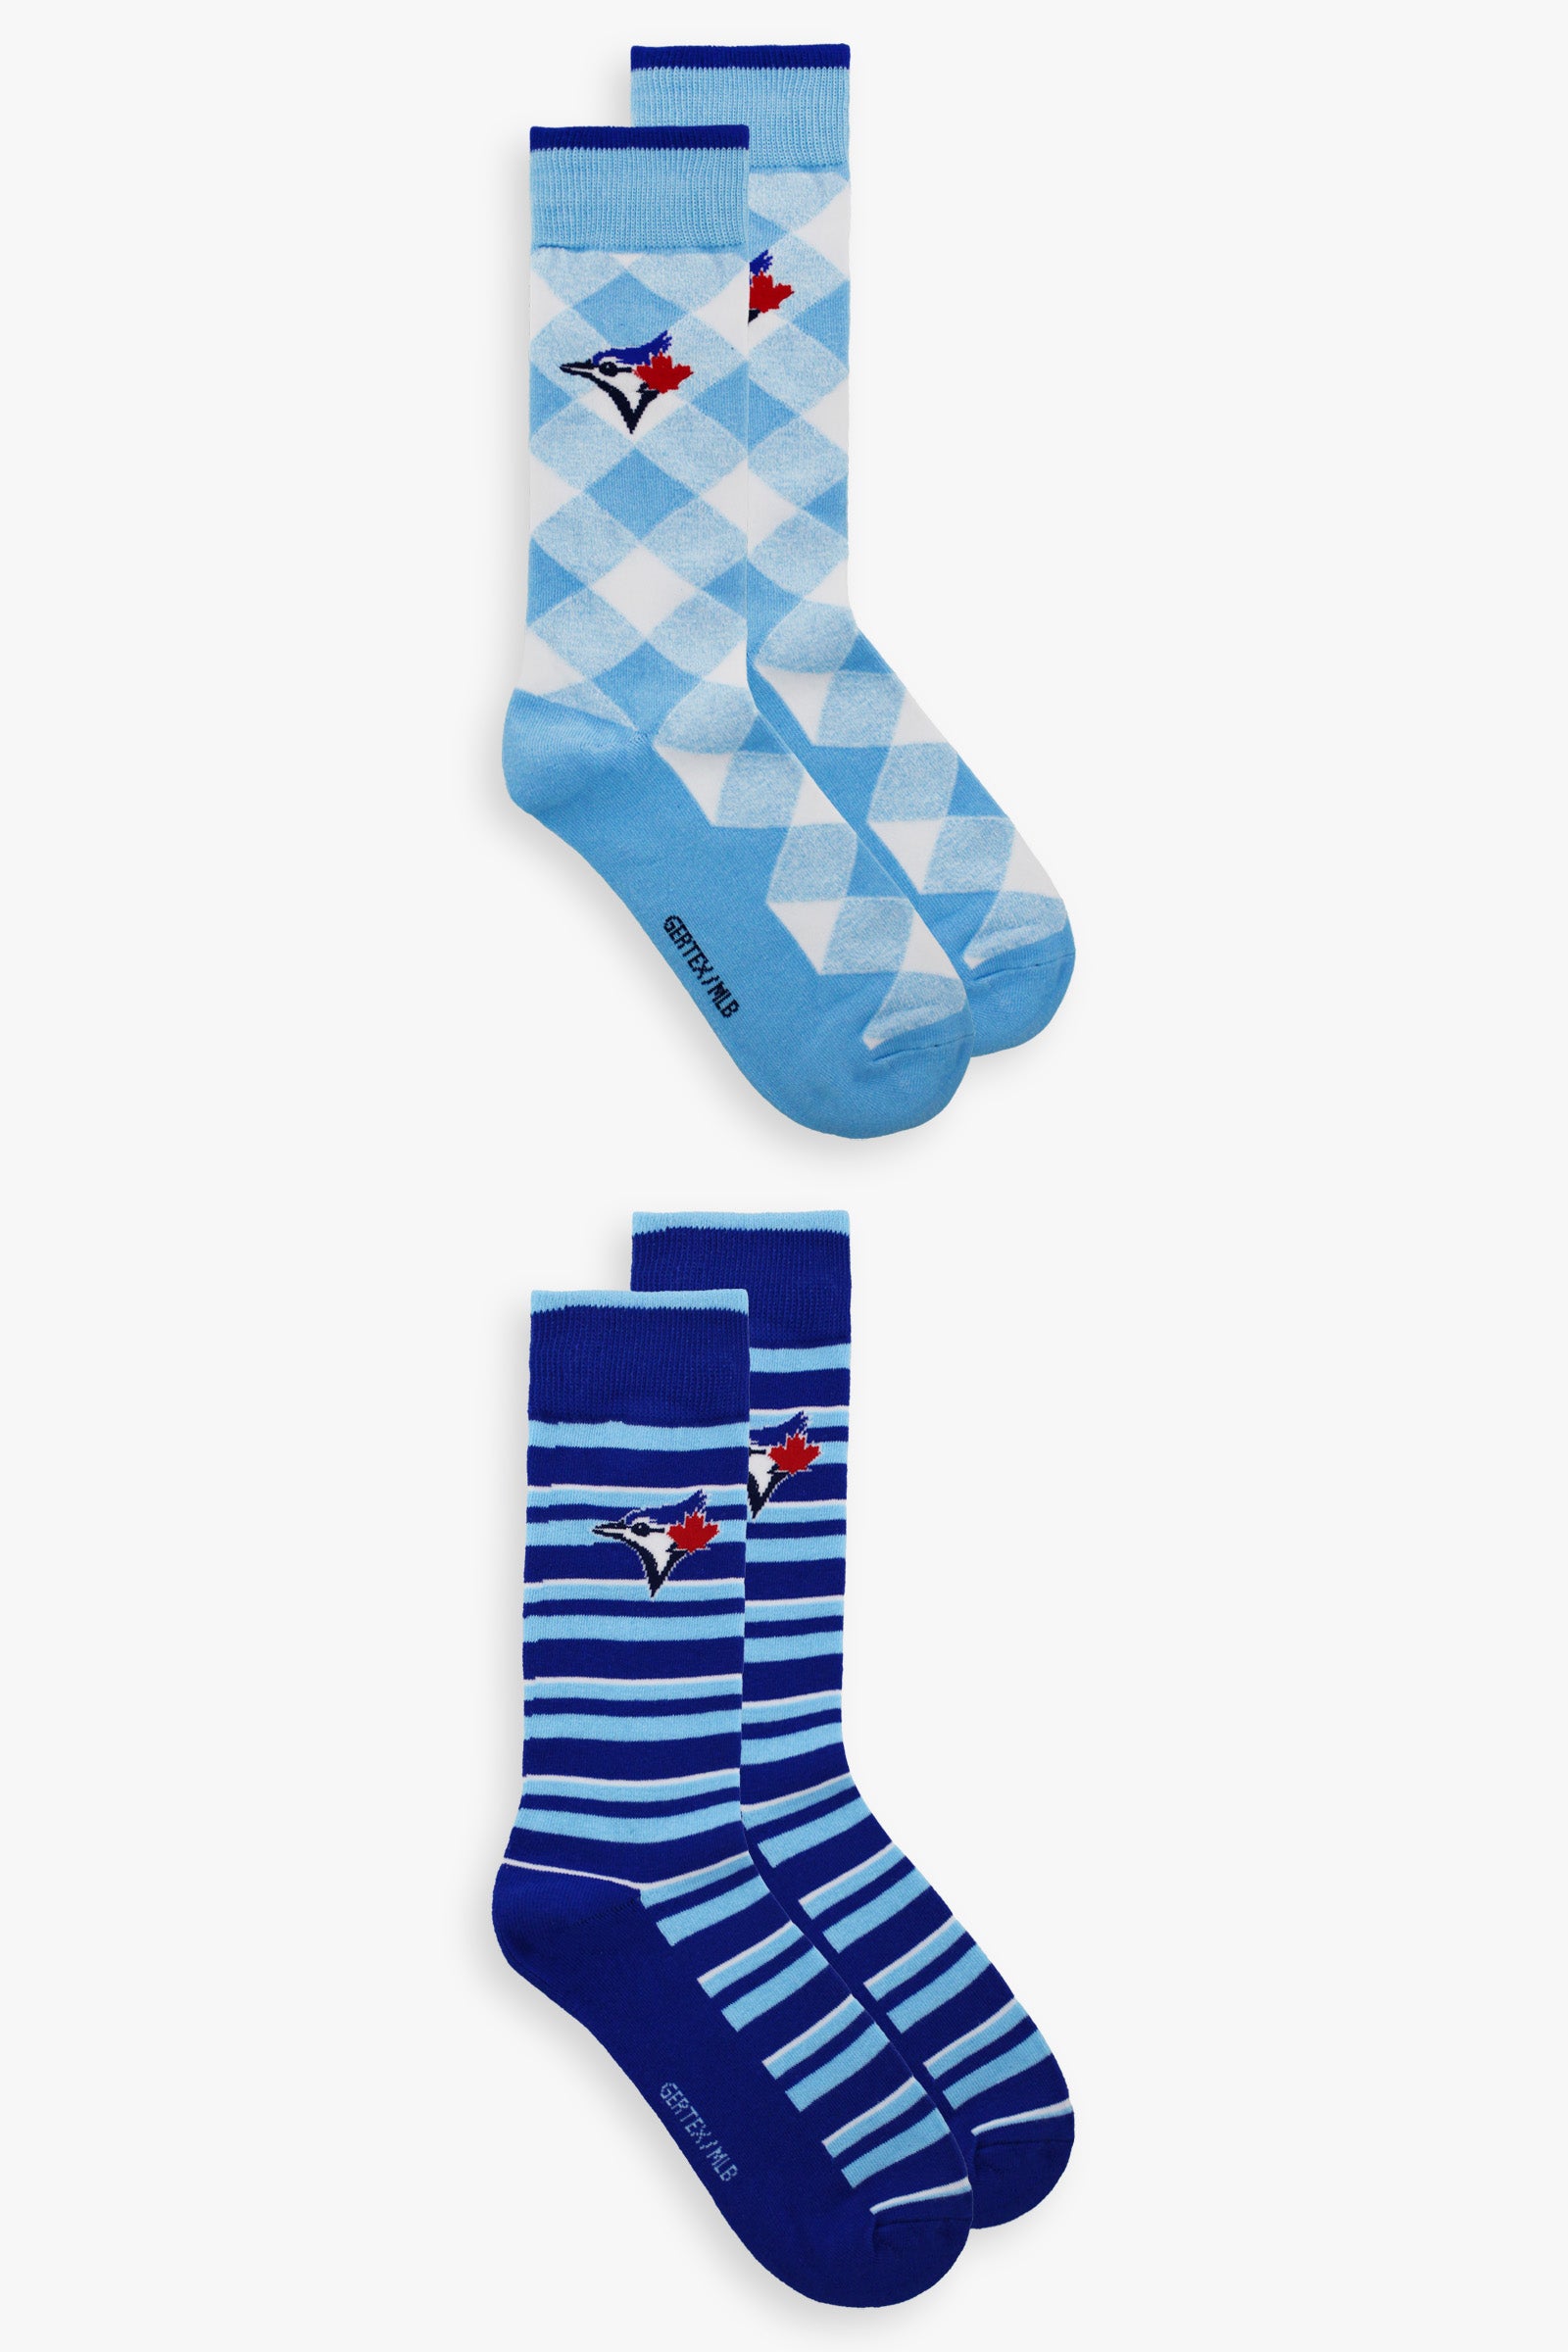 Gertex Men's MLB Toronto Blue Jays 2-Pack Dress Socks